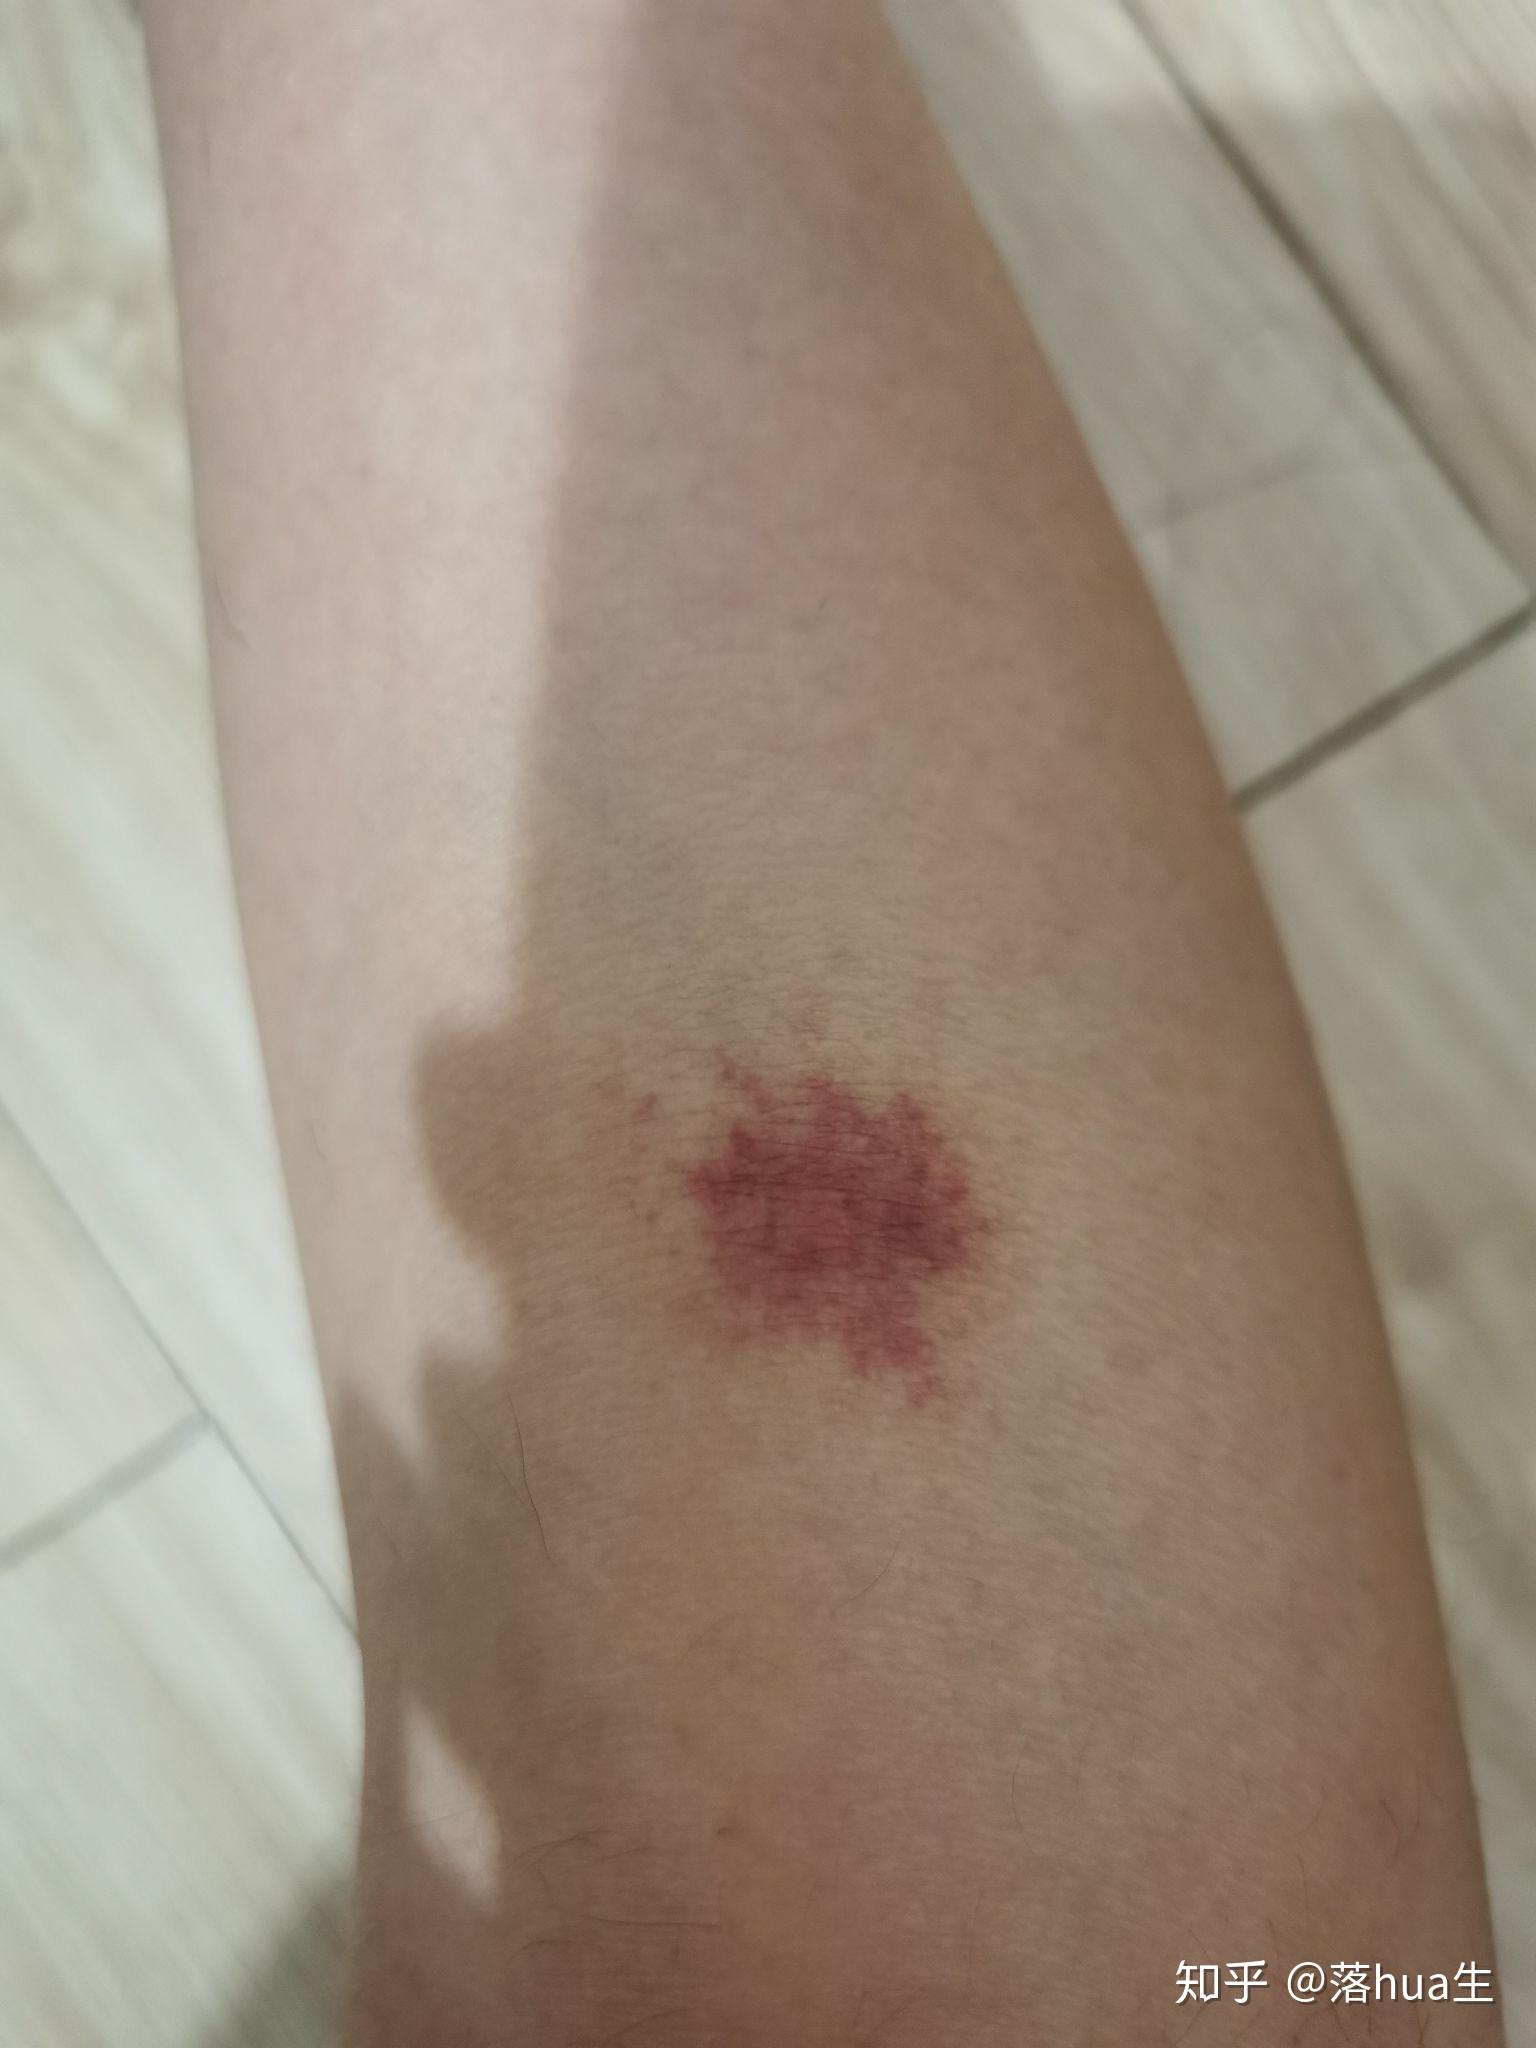 为什么我被蚊子咬了之后皮肤会变成类似淤青的紫红色消退的很慢肿的